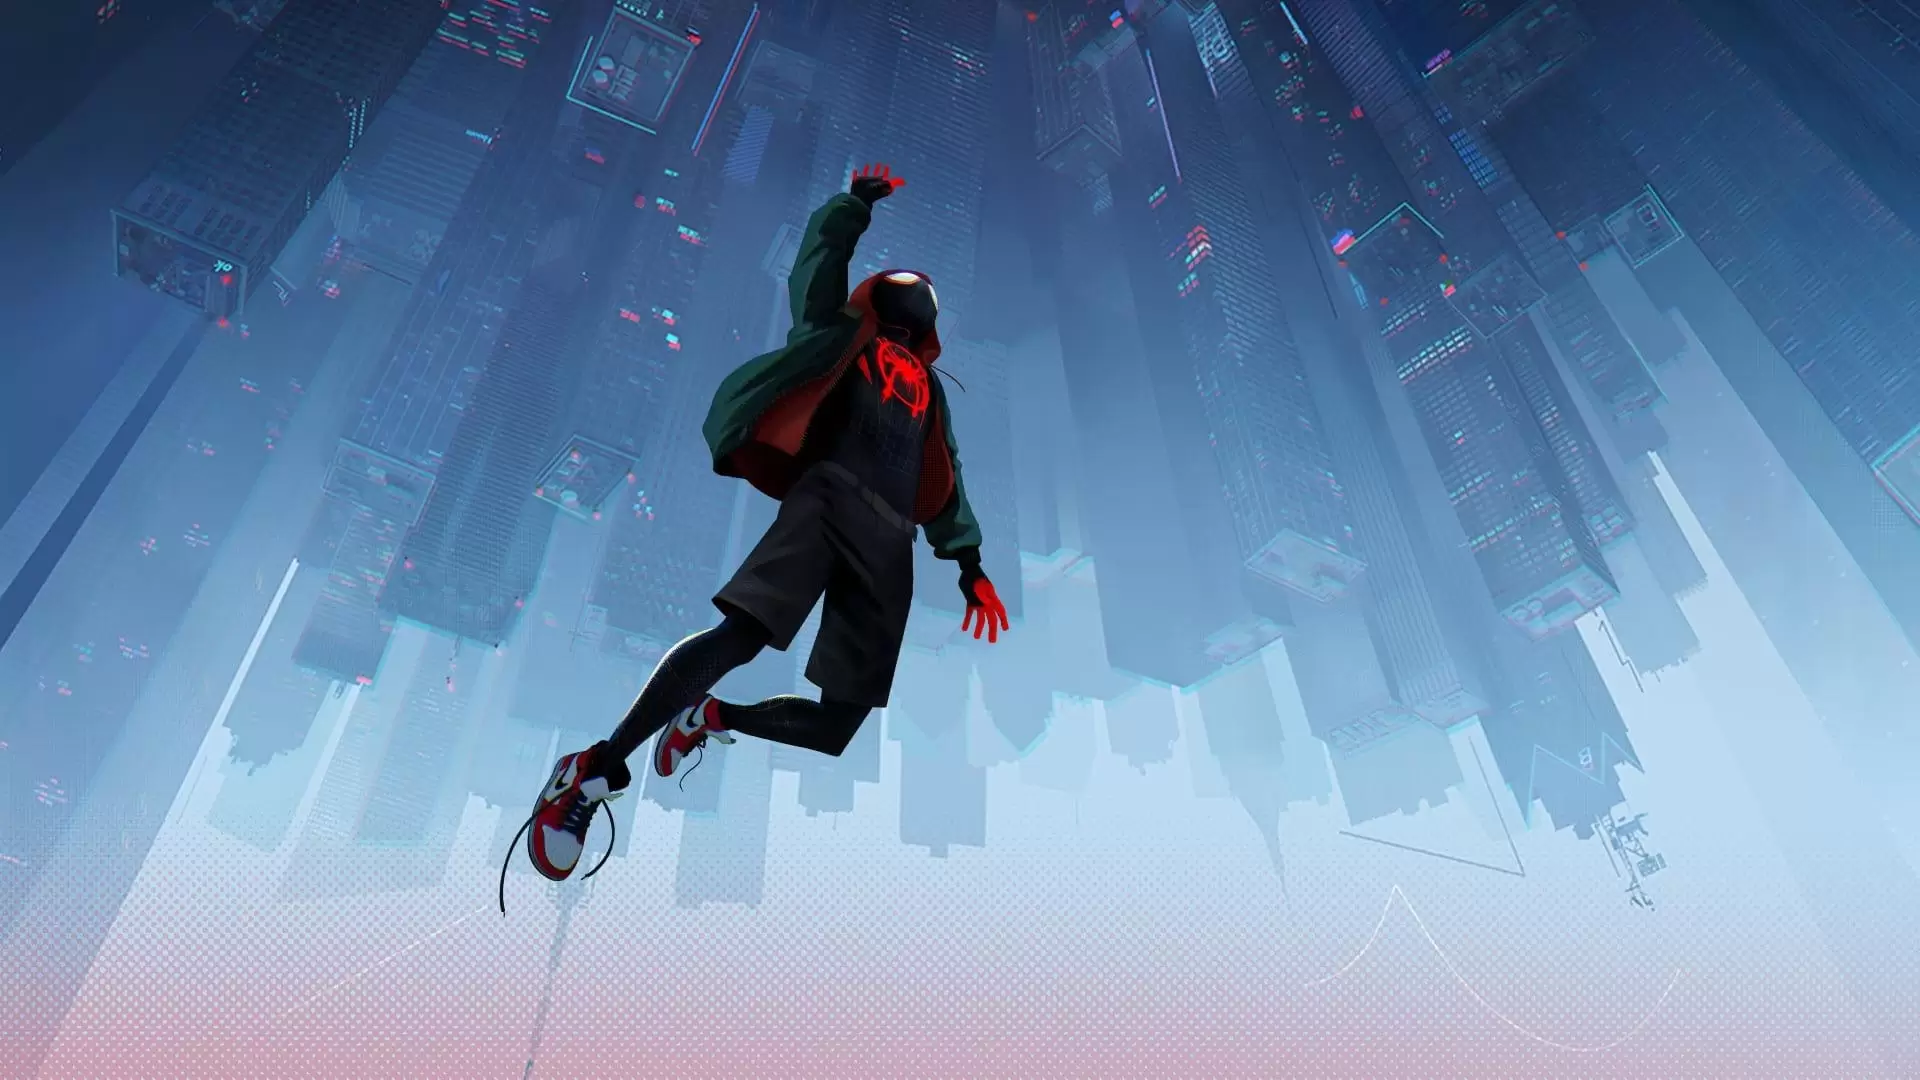 دانلود انیمیشن Spider-Man: Into the Spider-Verse 2018 (مرد عنکبوتی: به درون دنیای عنکبوتی) با زیرنویس فارسی و تماشای آنلاین